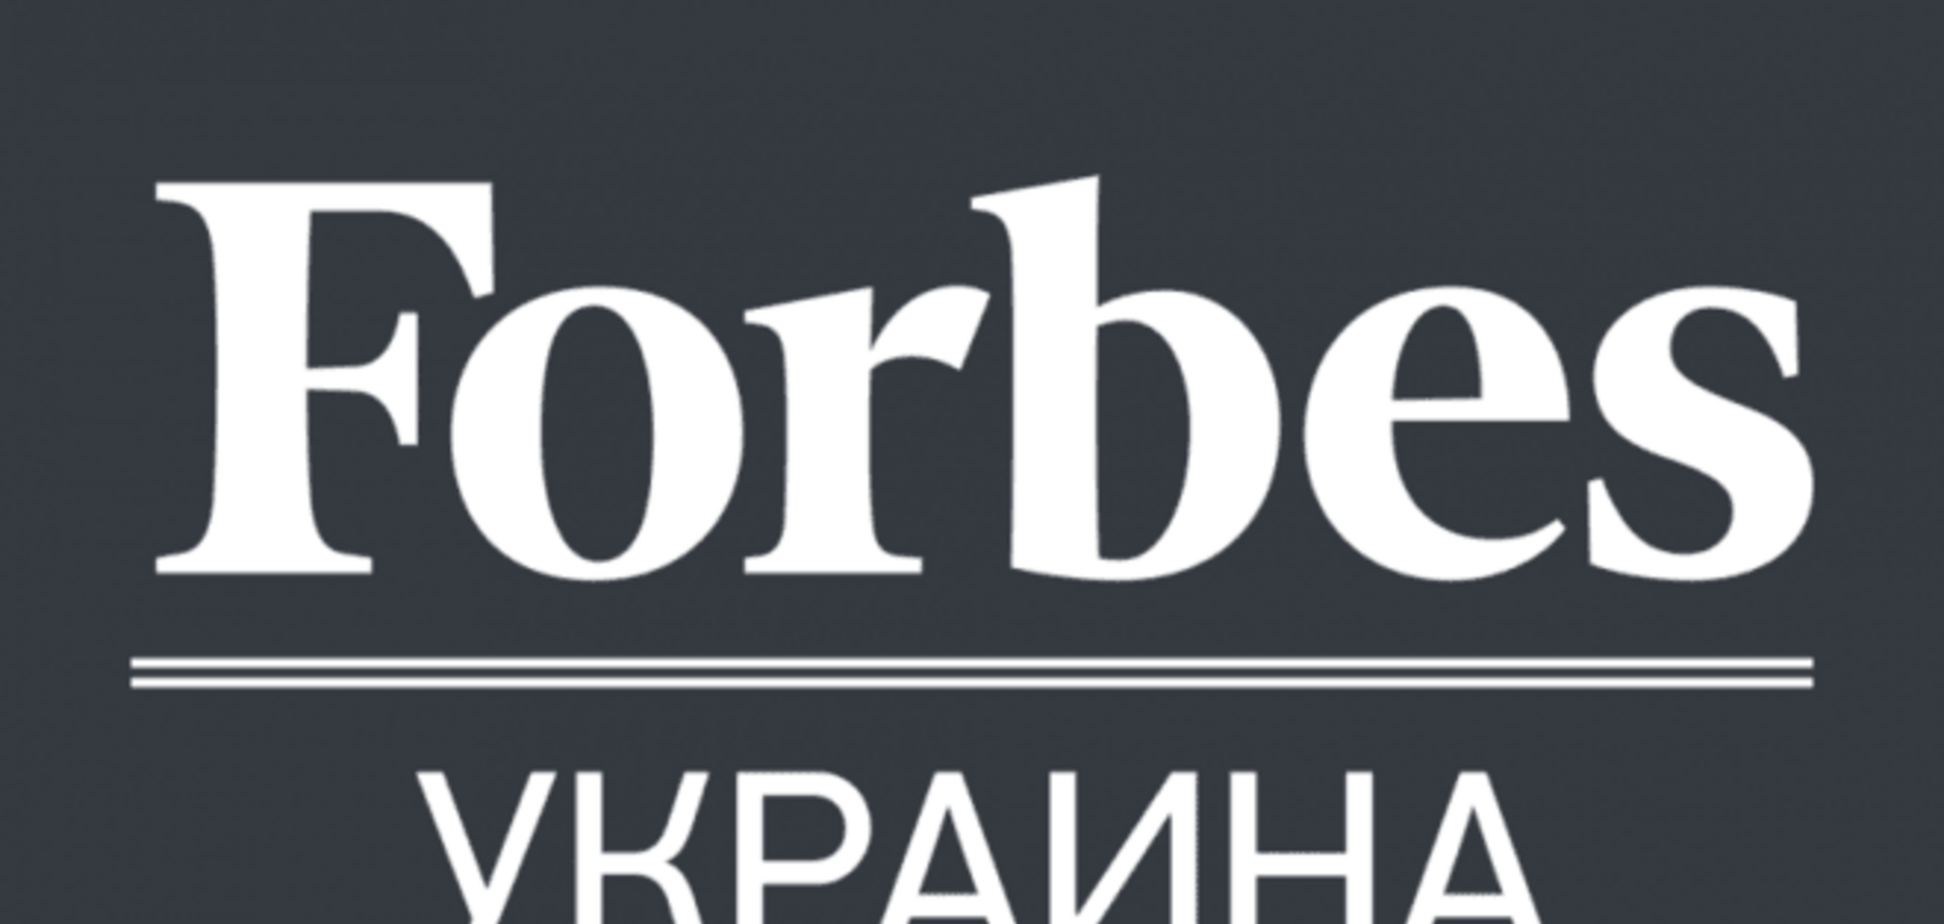 Тепер все: американський Forbes позбавив українське видання ліцензії